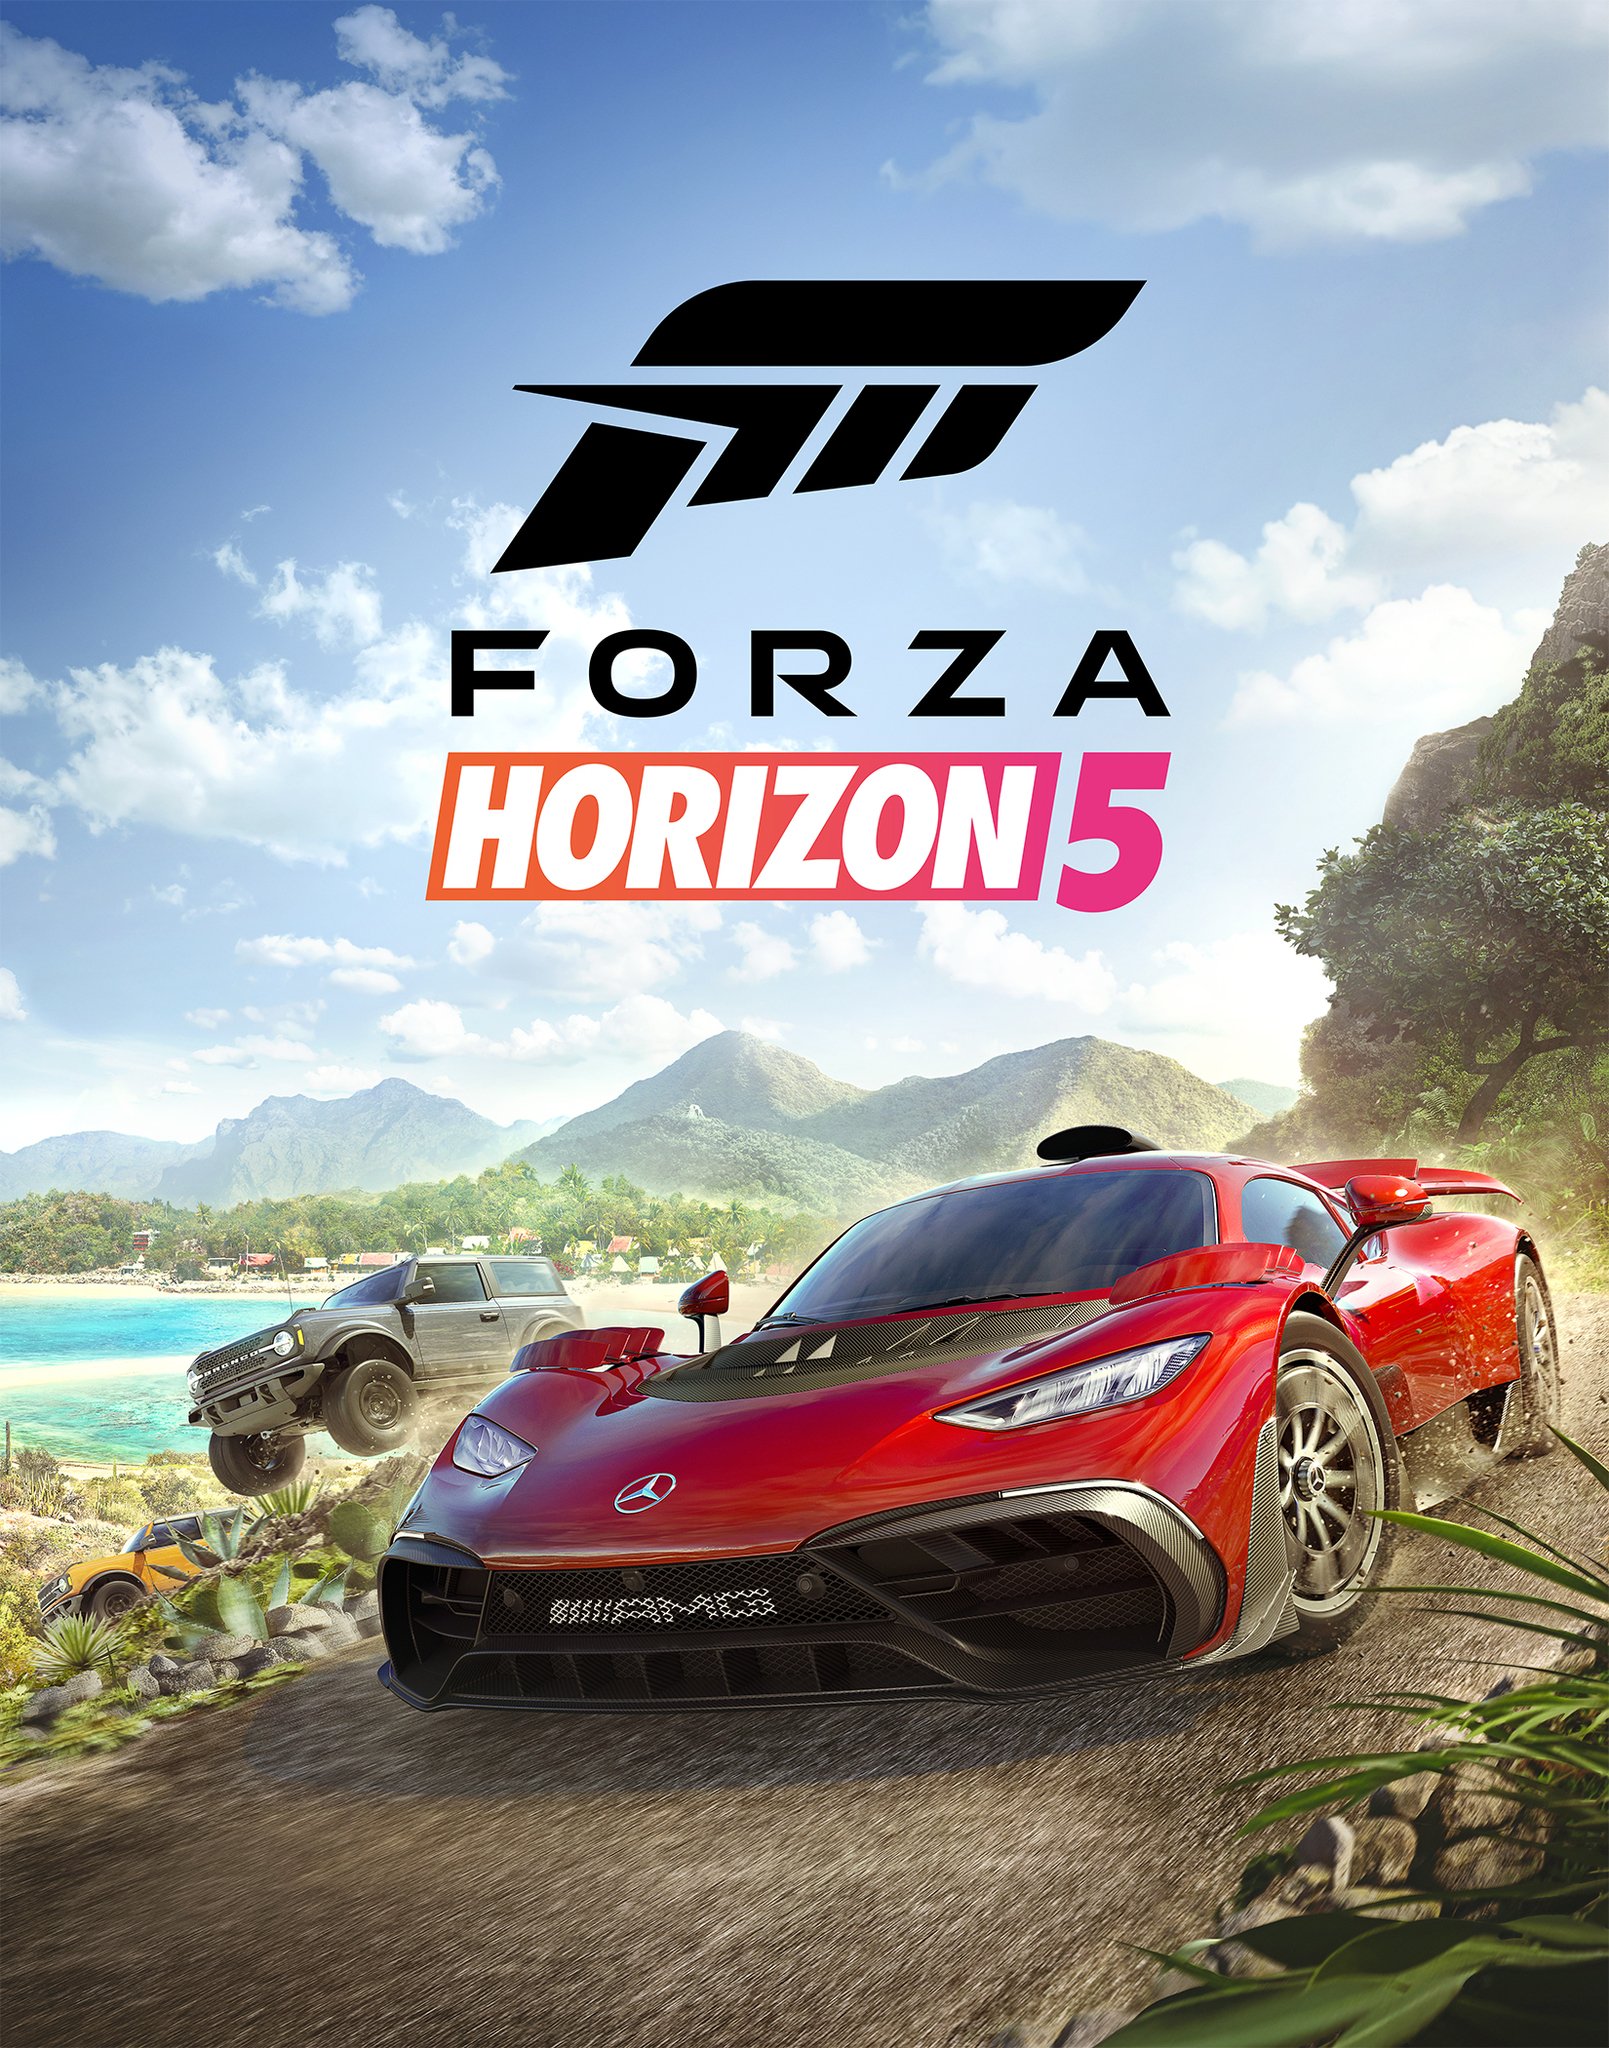 Forza Horizon 5 cars: Full car list (so far), DLC, gifts, Wheelspins